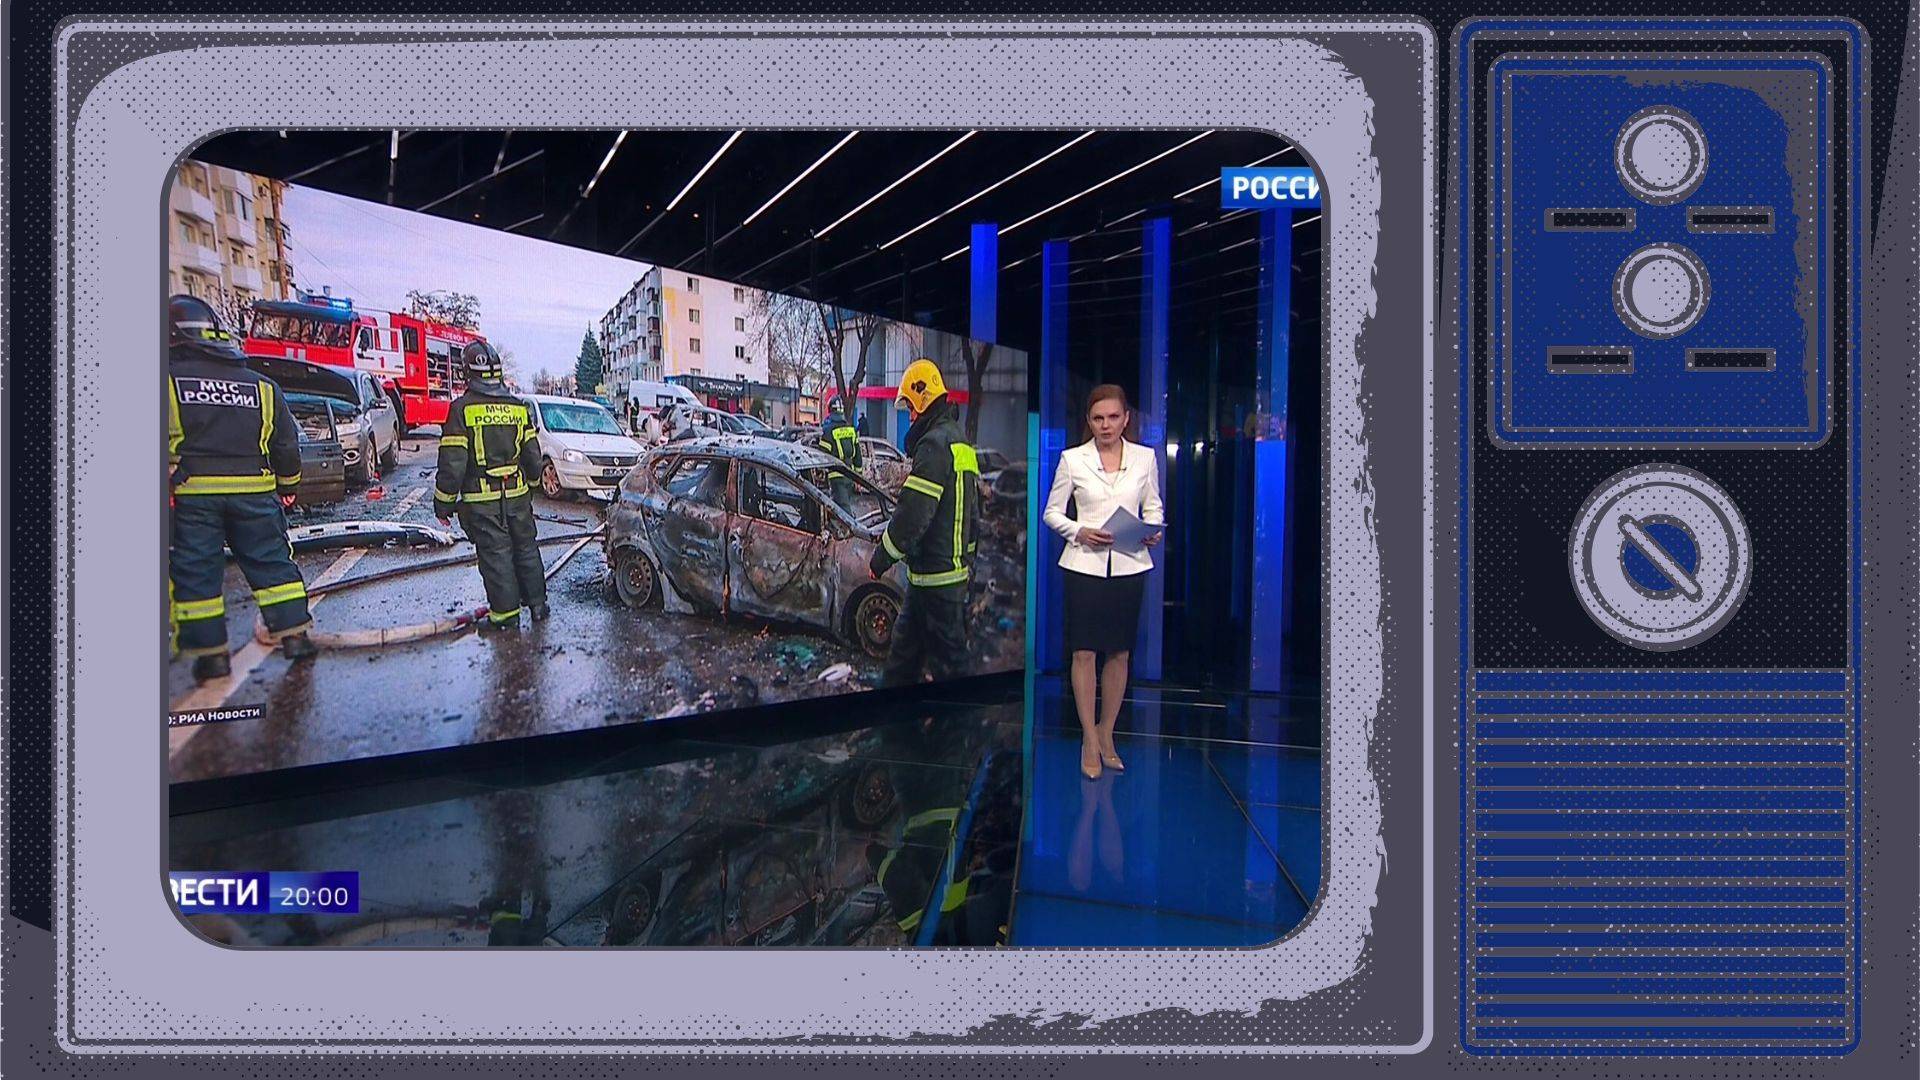 Grafika: w ramce starego telewizora zdjęcie ze studia rosyjskiej TV, gdzie prowadząca pokazuje zniszczenia w Biełgorodzie